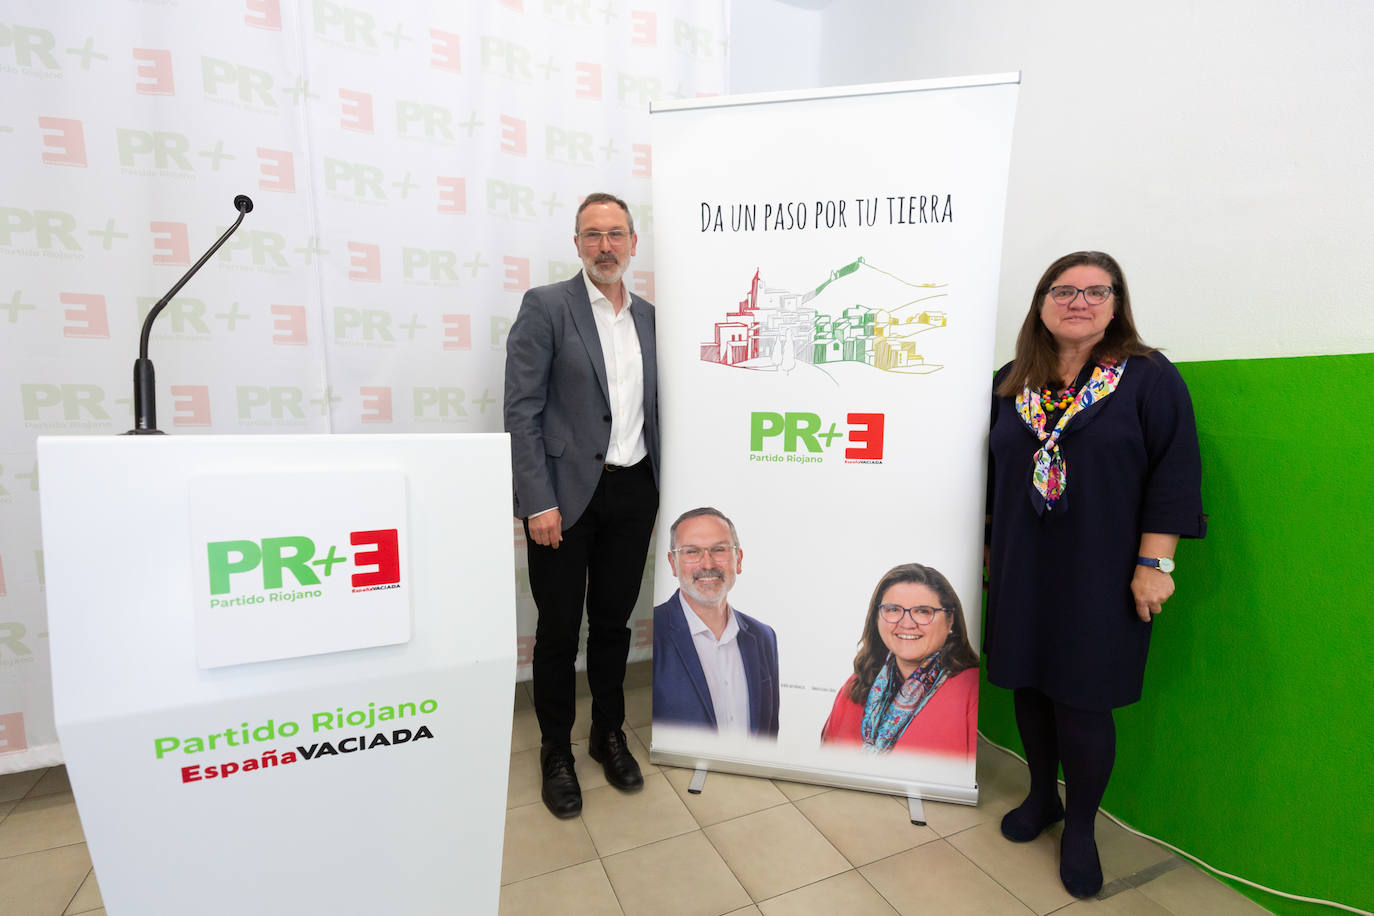 PR+ y España Vaciada mantendrán sus nombres en las papeletas del 28M